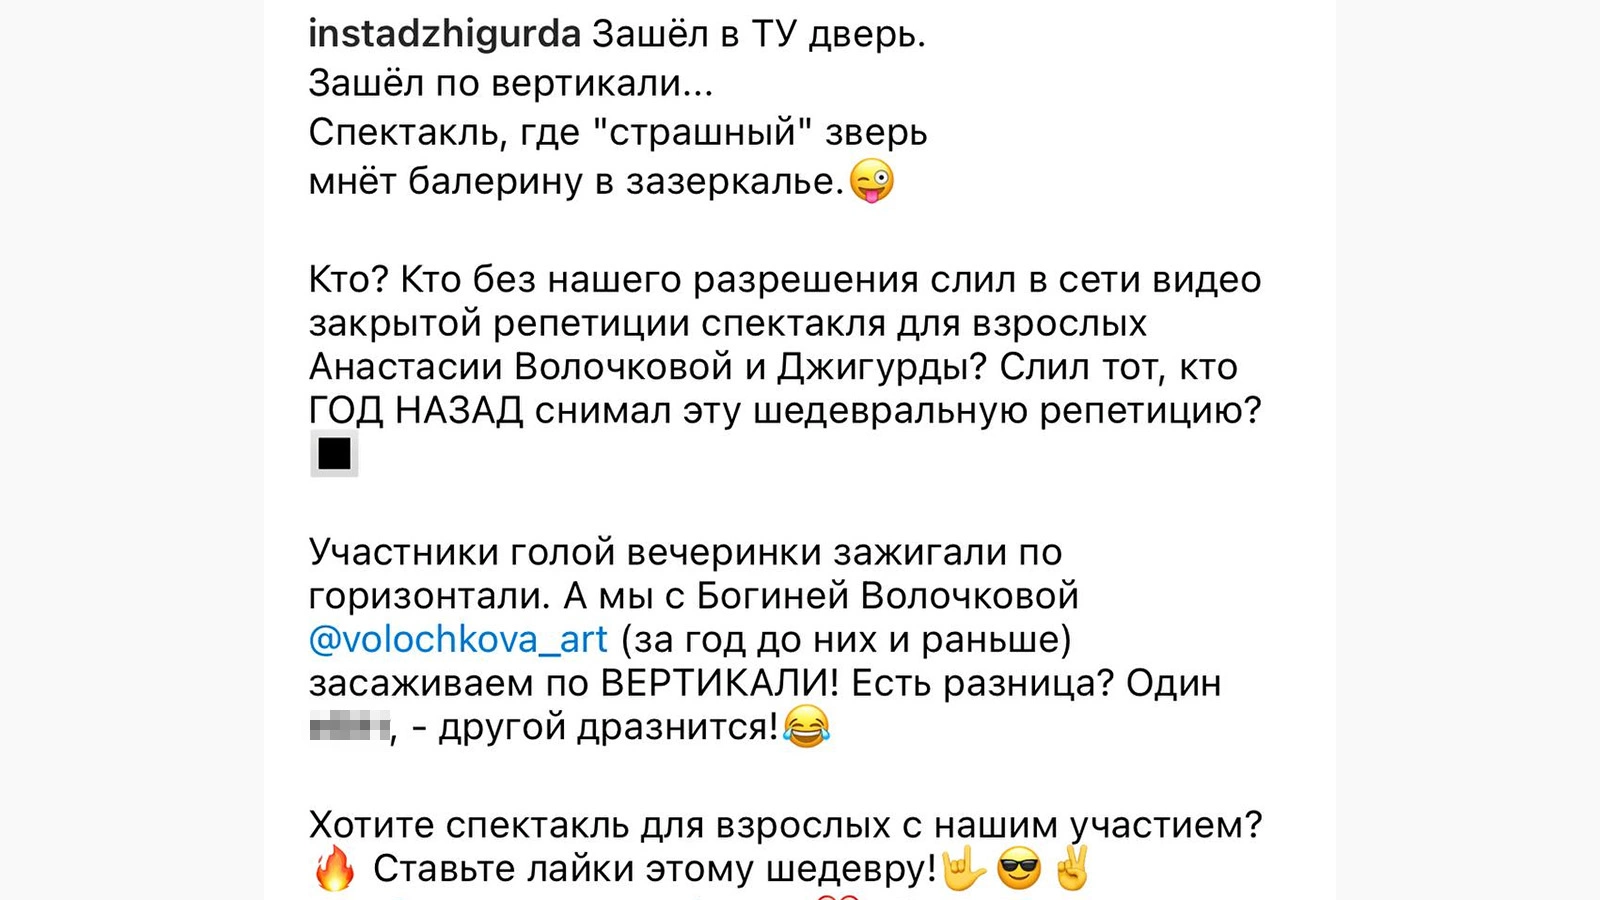 instadzigurda / Instagram (владелец соцсети компания Metа признана в России экстремистской организацией и запрещена)